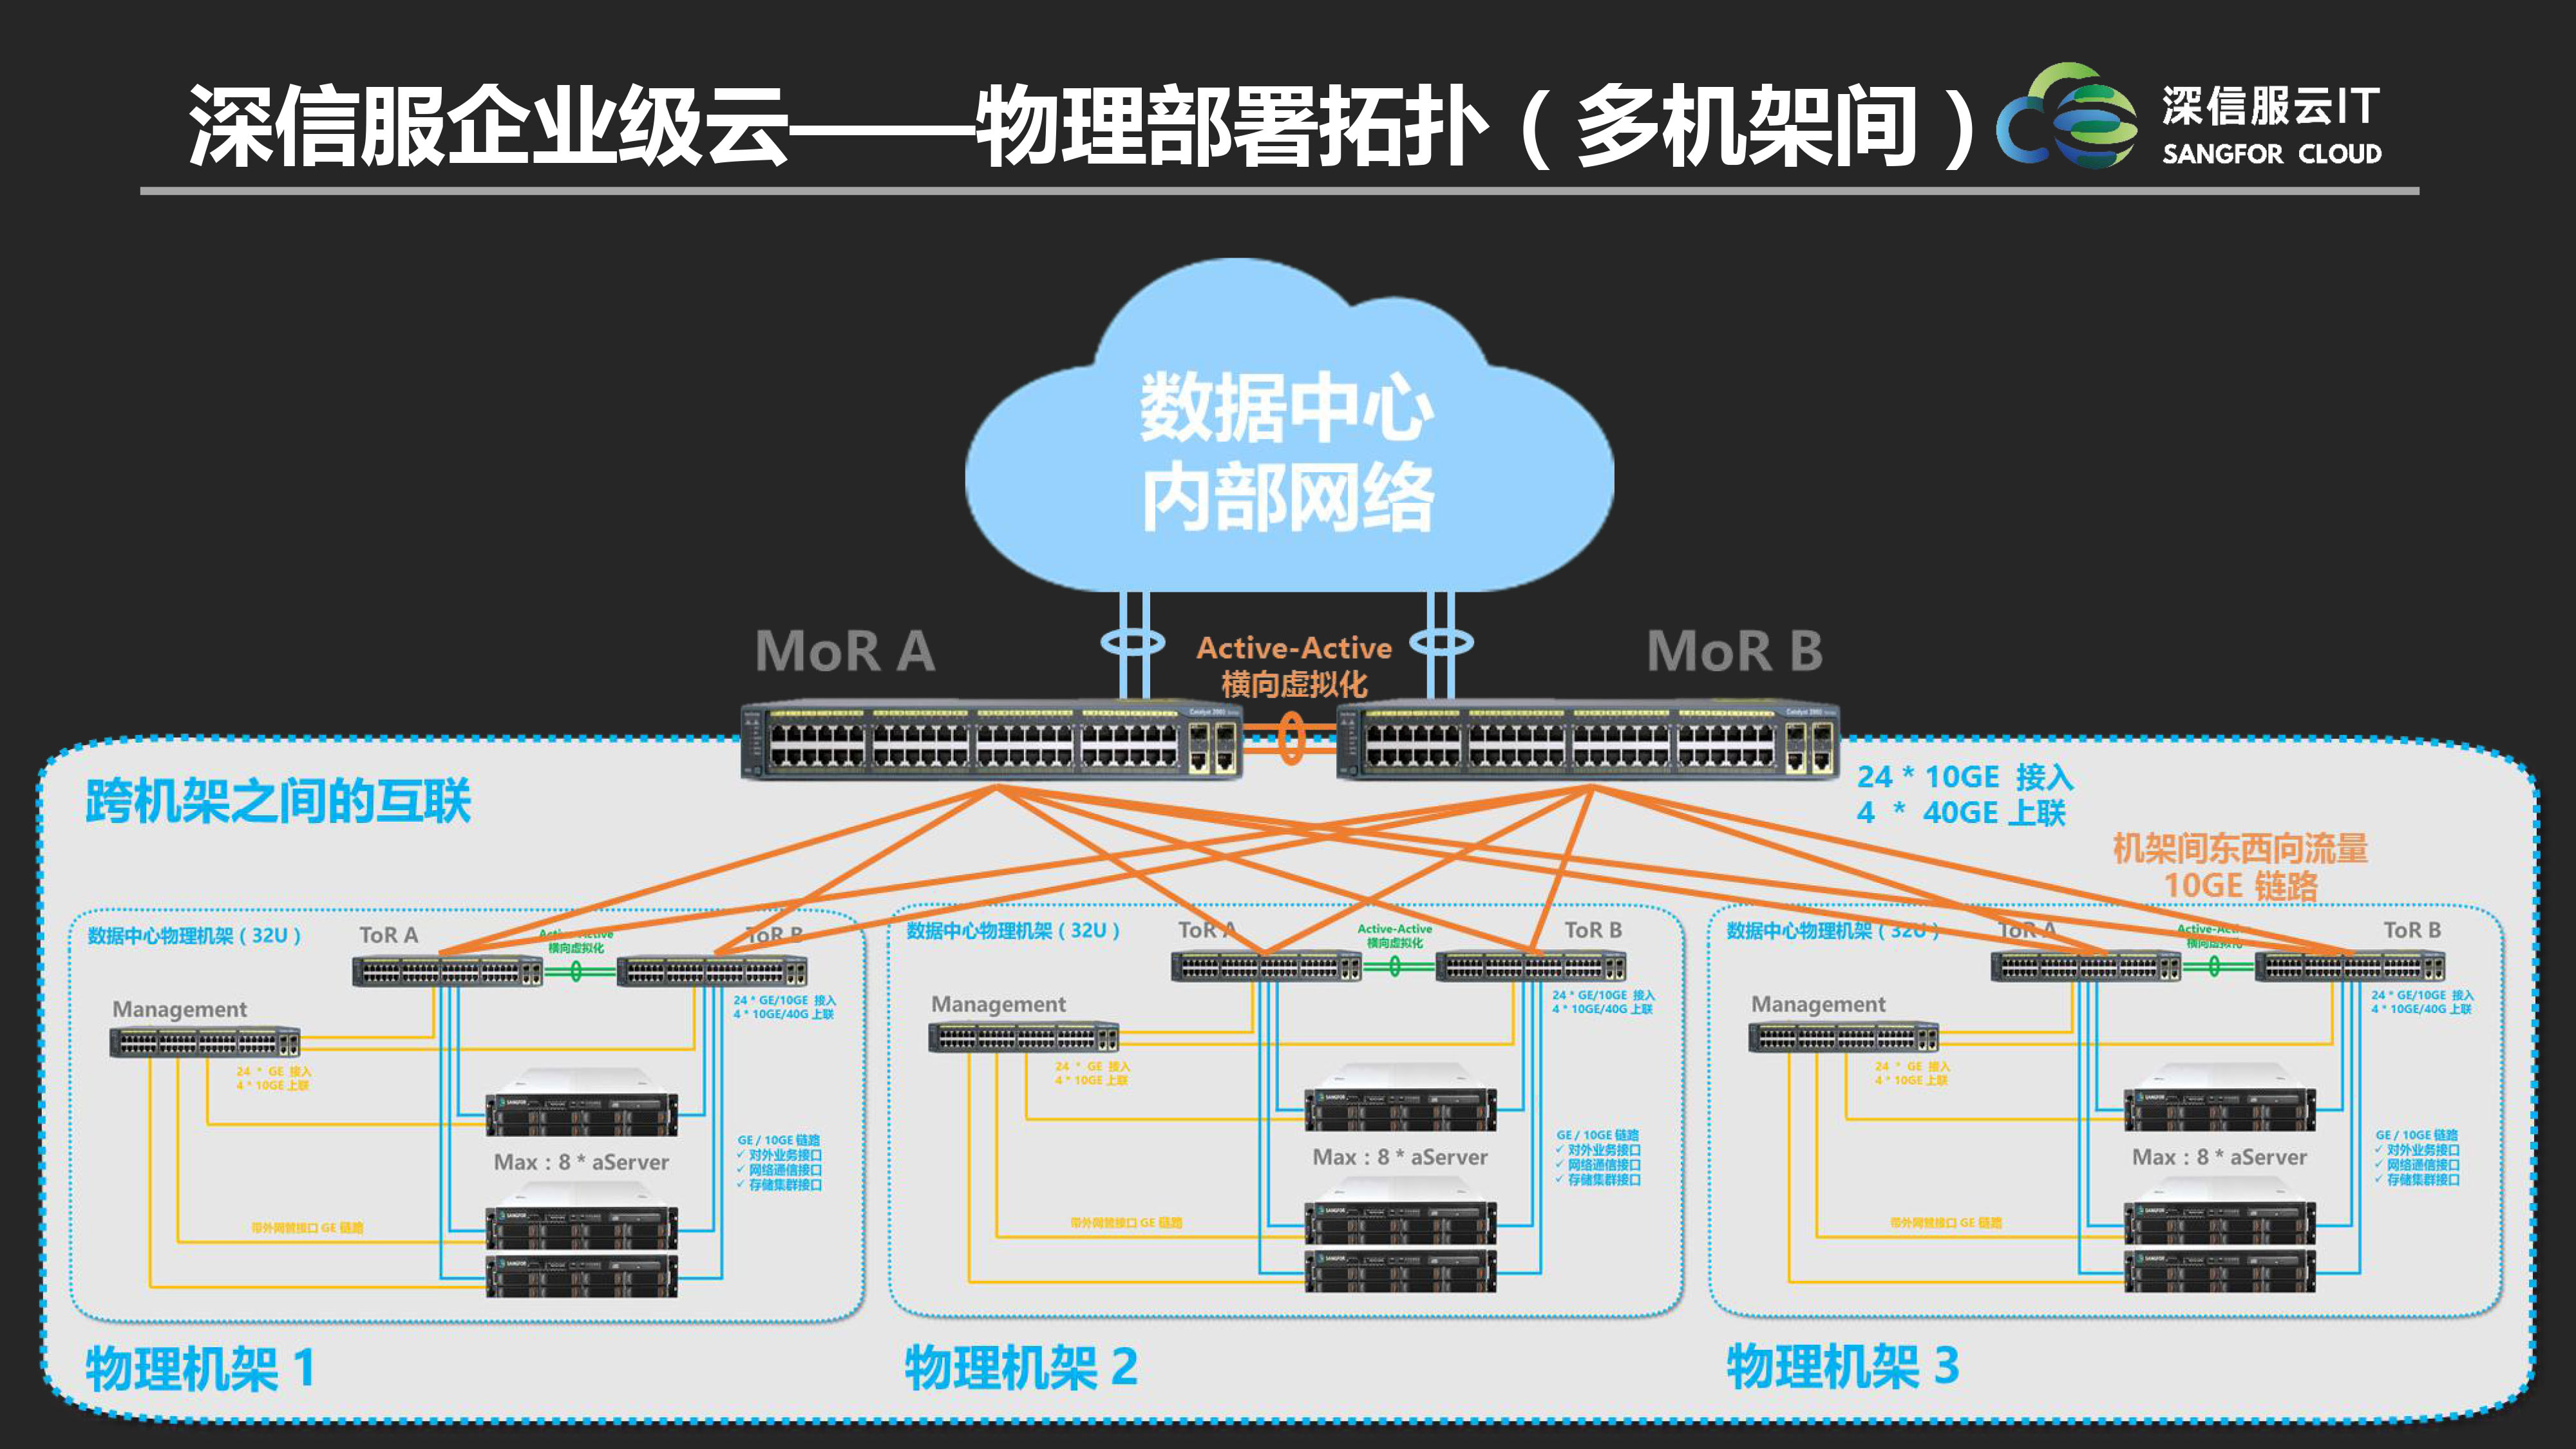 盲孔螺栓研发及市场化应用_中国linux操作系统的研发应用_中国linux系统有哪些?